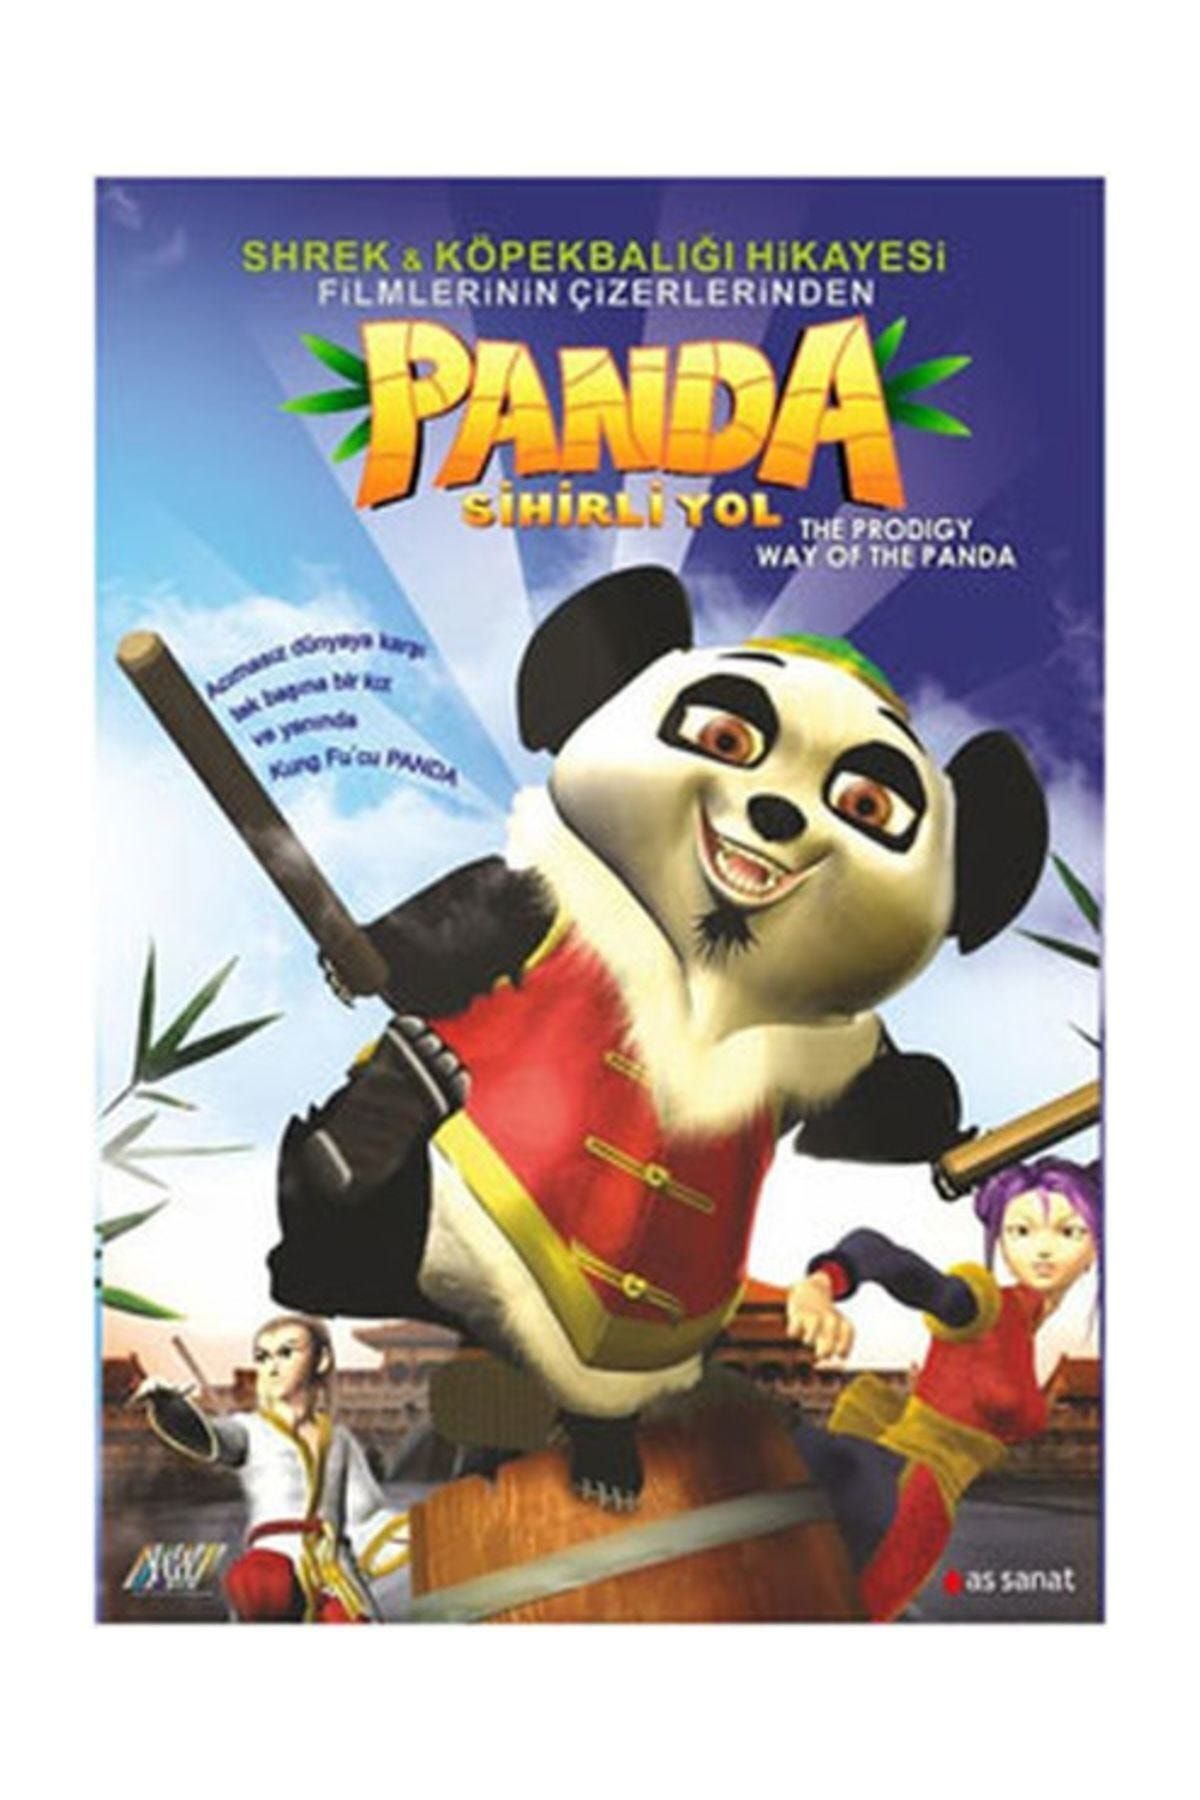 Pal Dvd-way Of The Panda: The Prodigy - Panda: Sihirli Yol